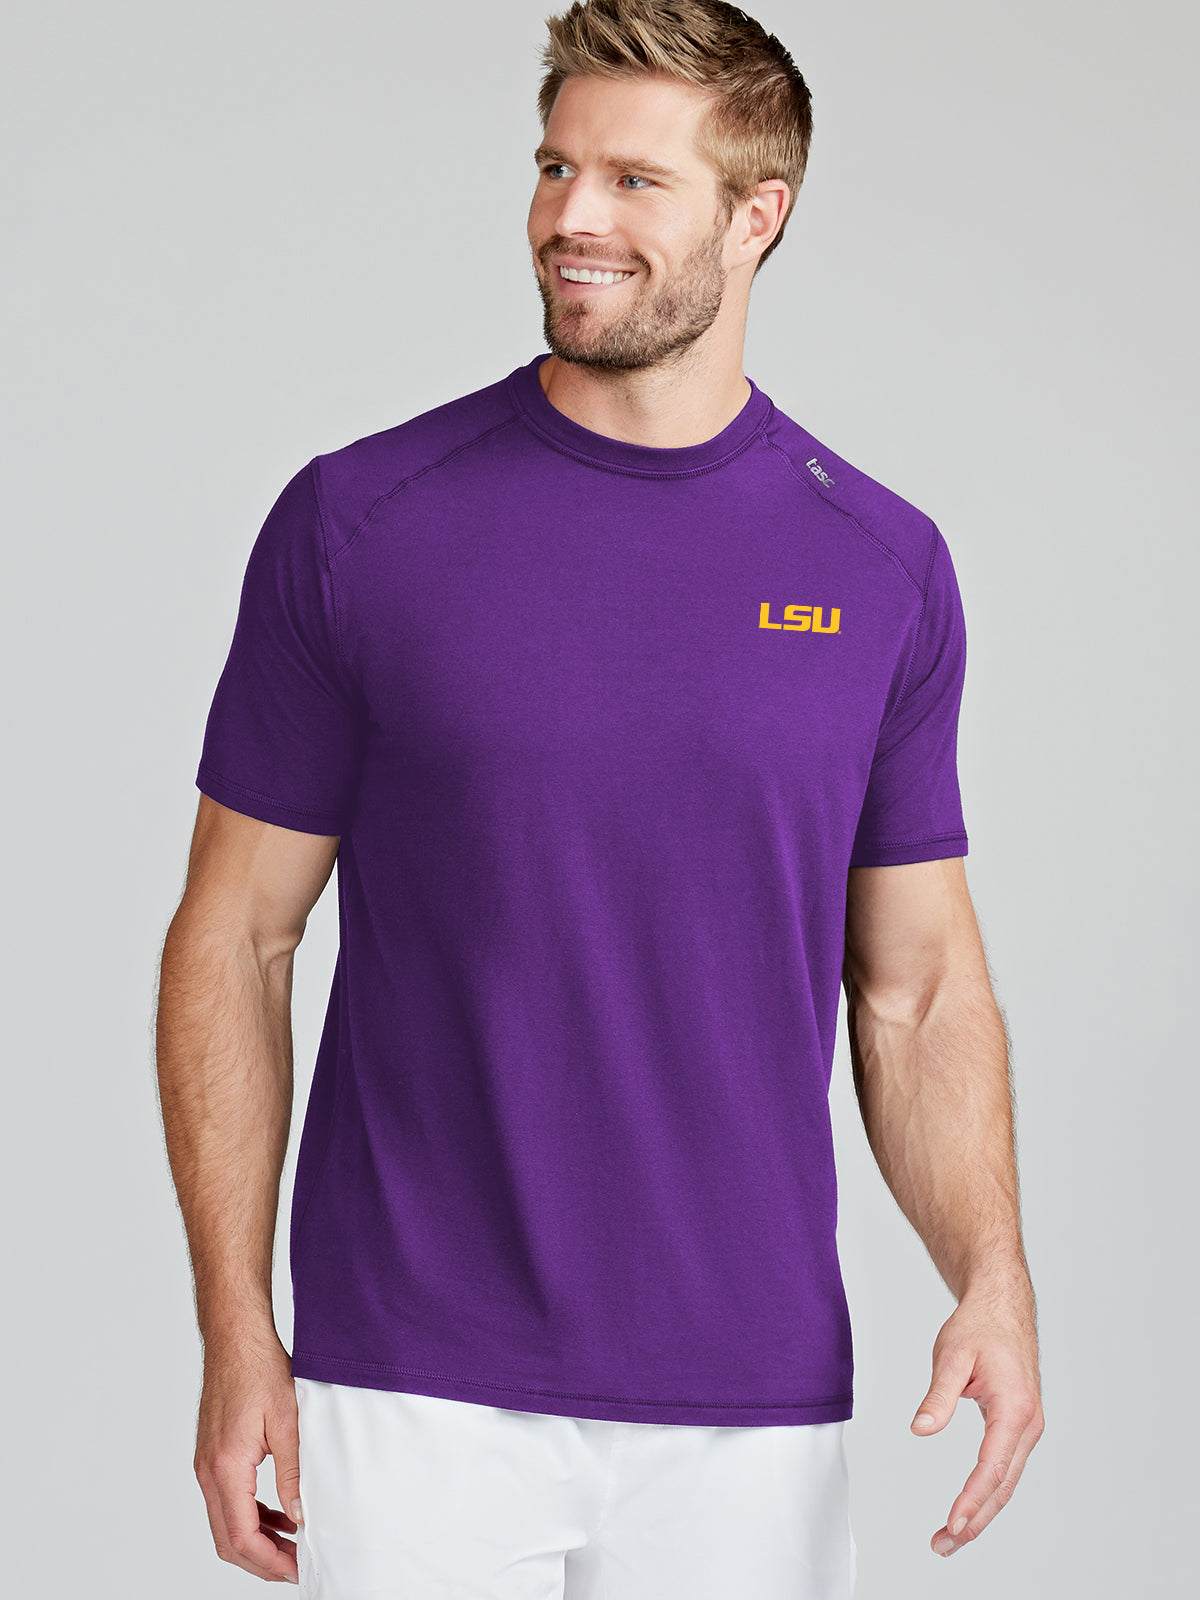 Carrollton Fitness T-Shirt - LSU - tasc Performance (PurpleC)